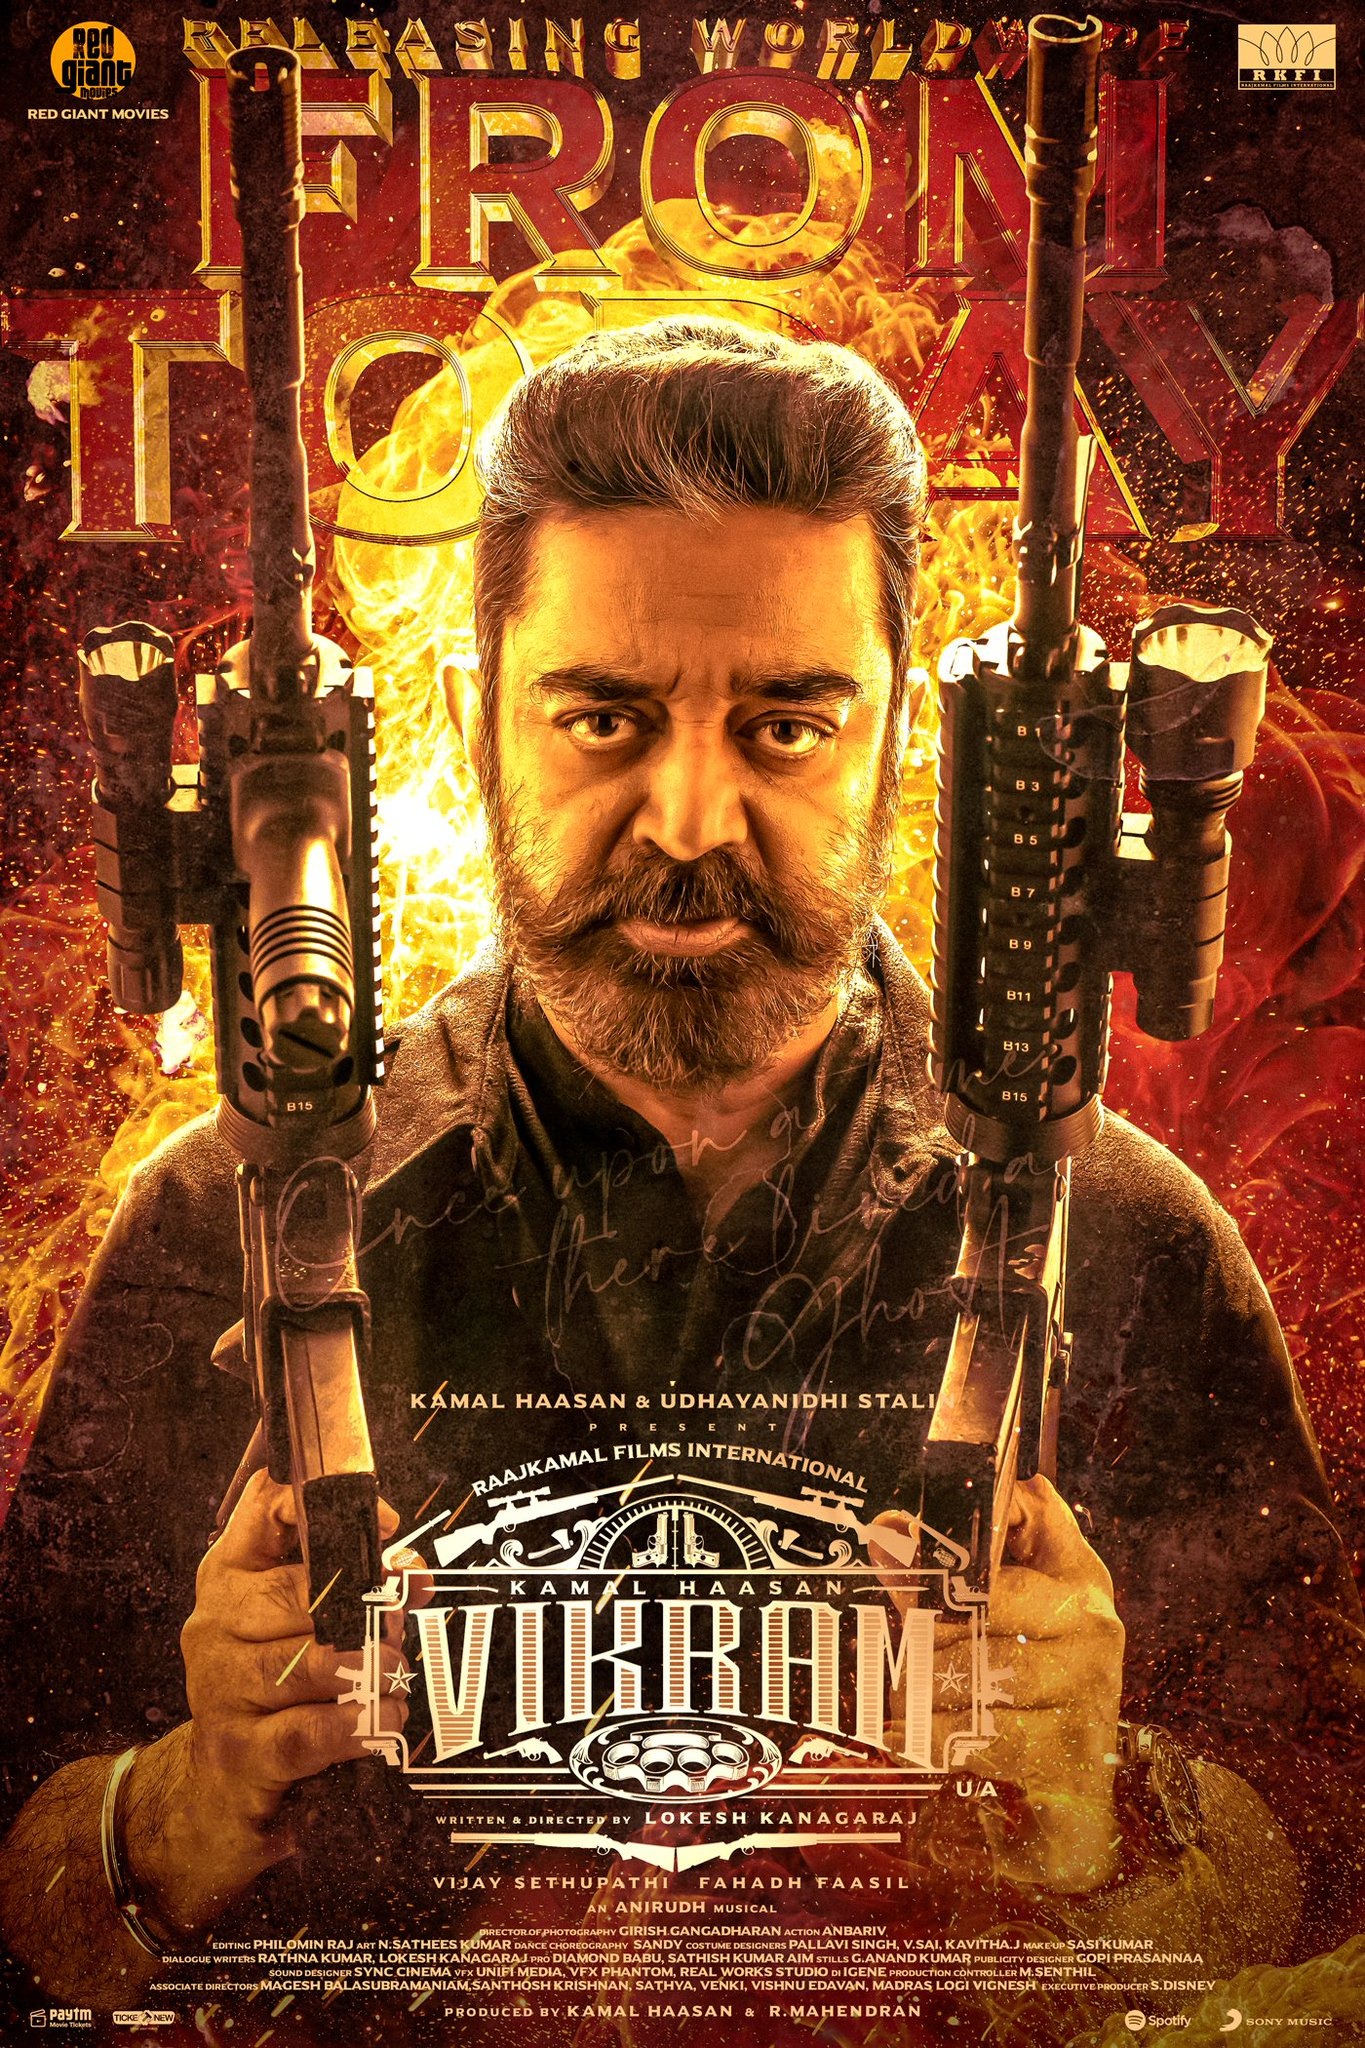 Mega Sized Movie Poster Image for Vikram 